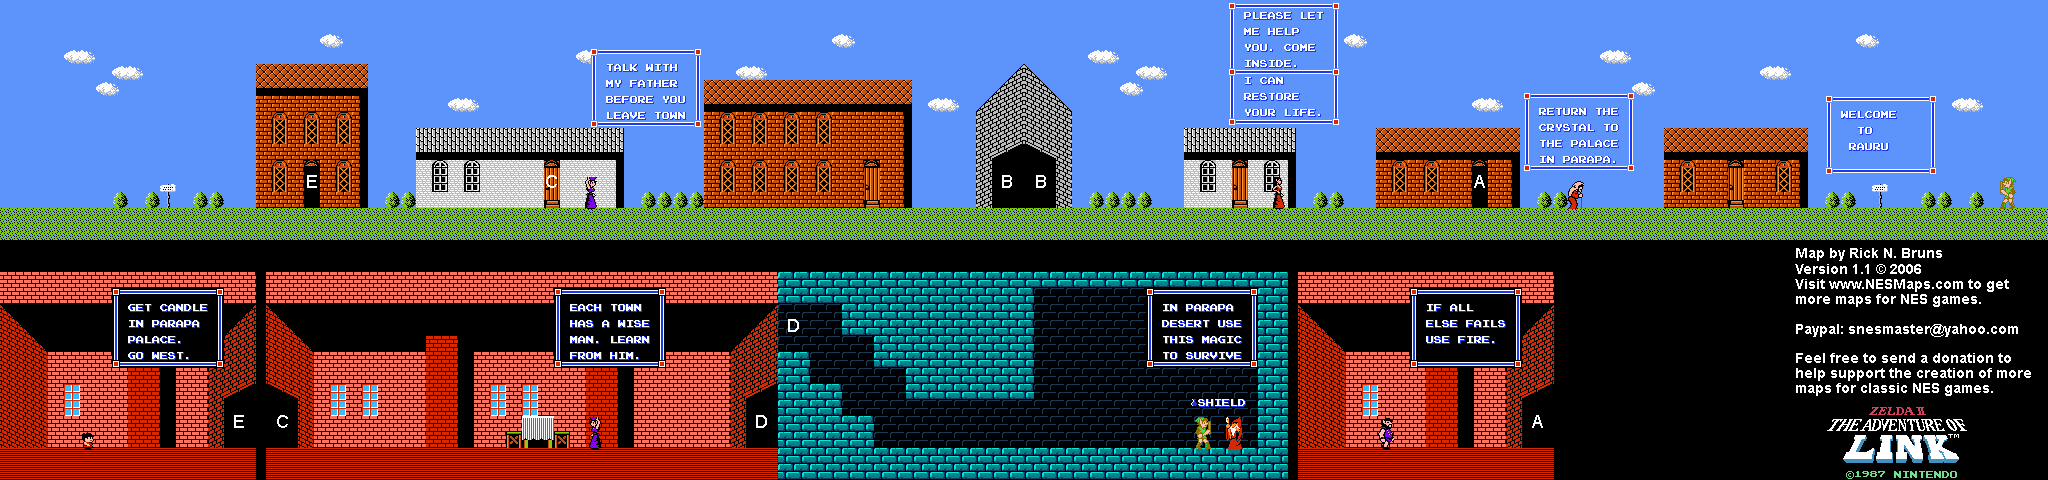 Zelda II The Adventure of Link - Rauru Town [03] - NES Map